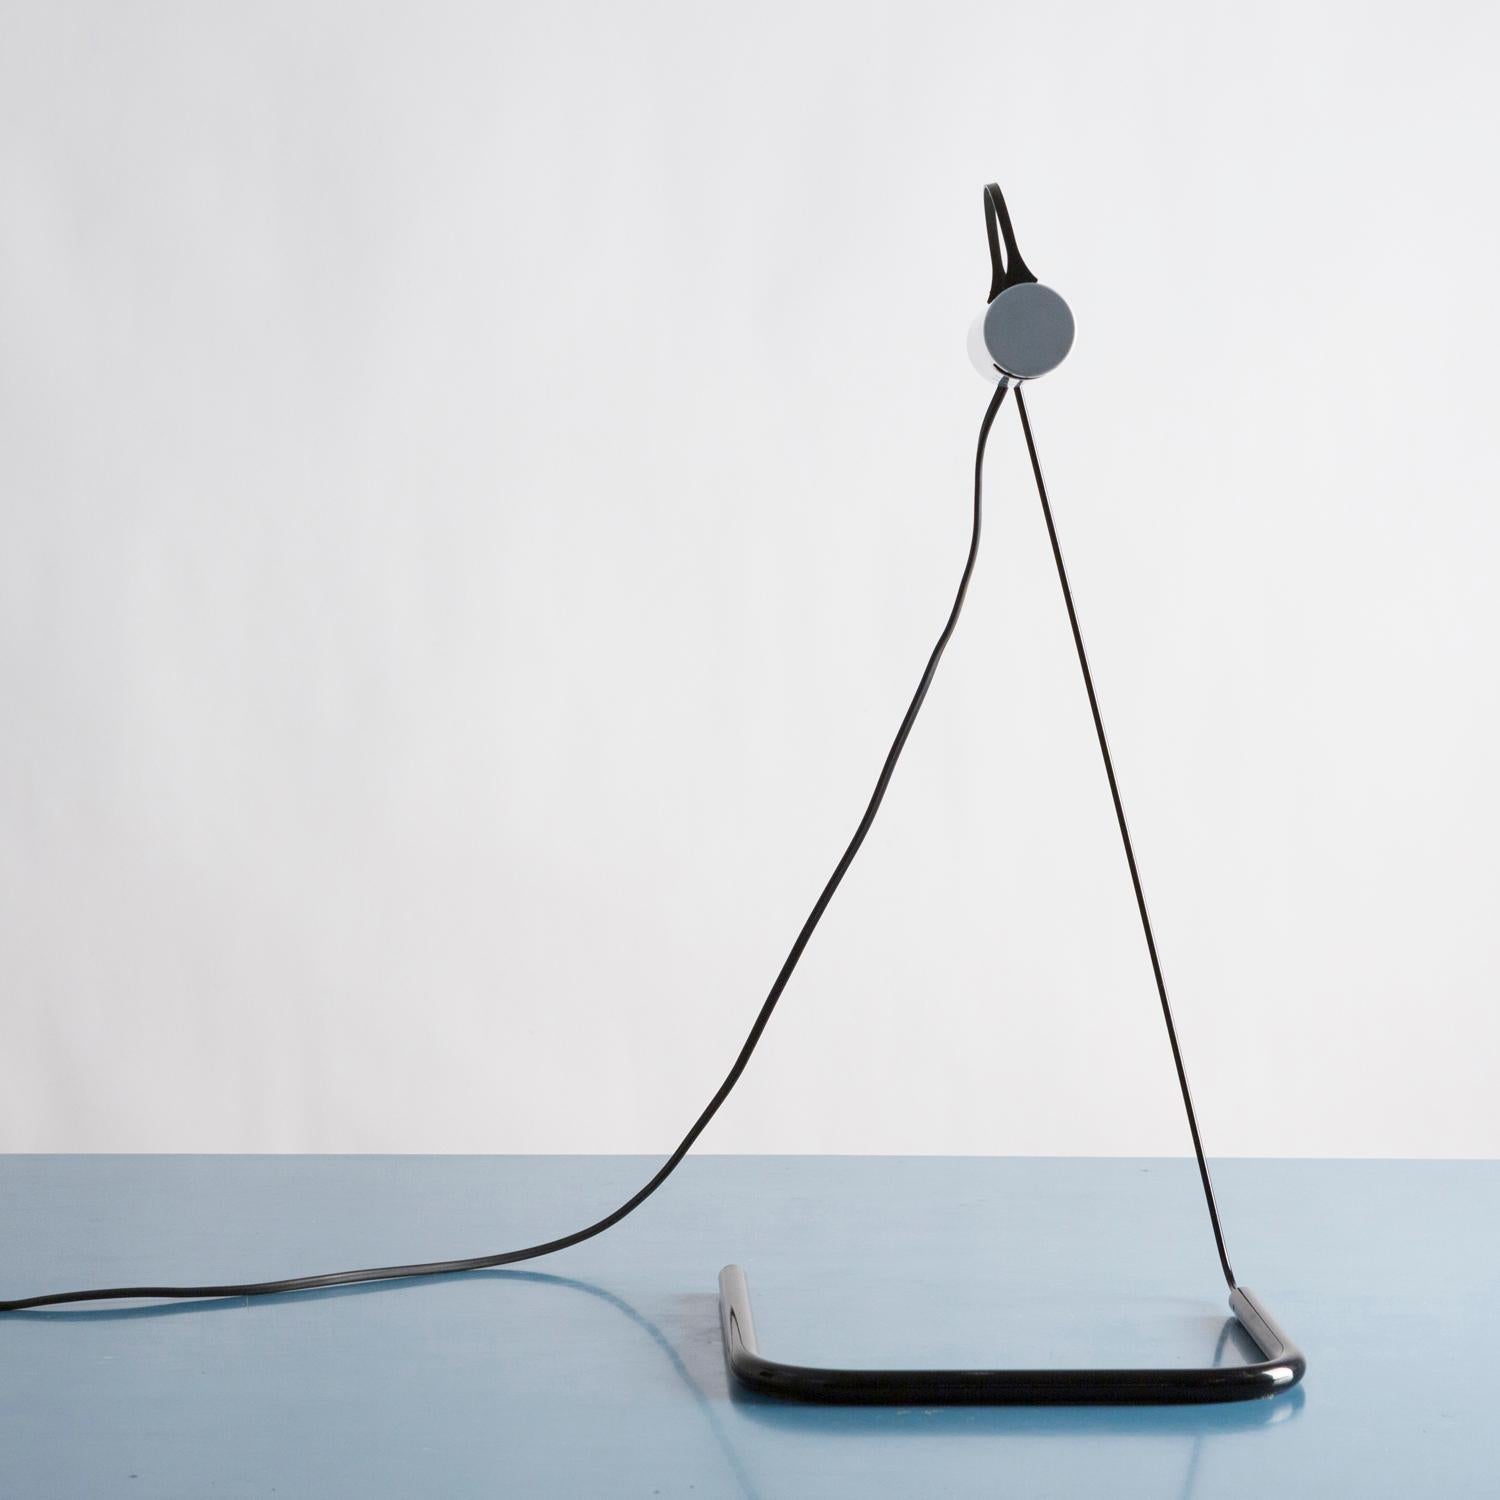 Adjustable table or desk lamp model 